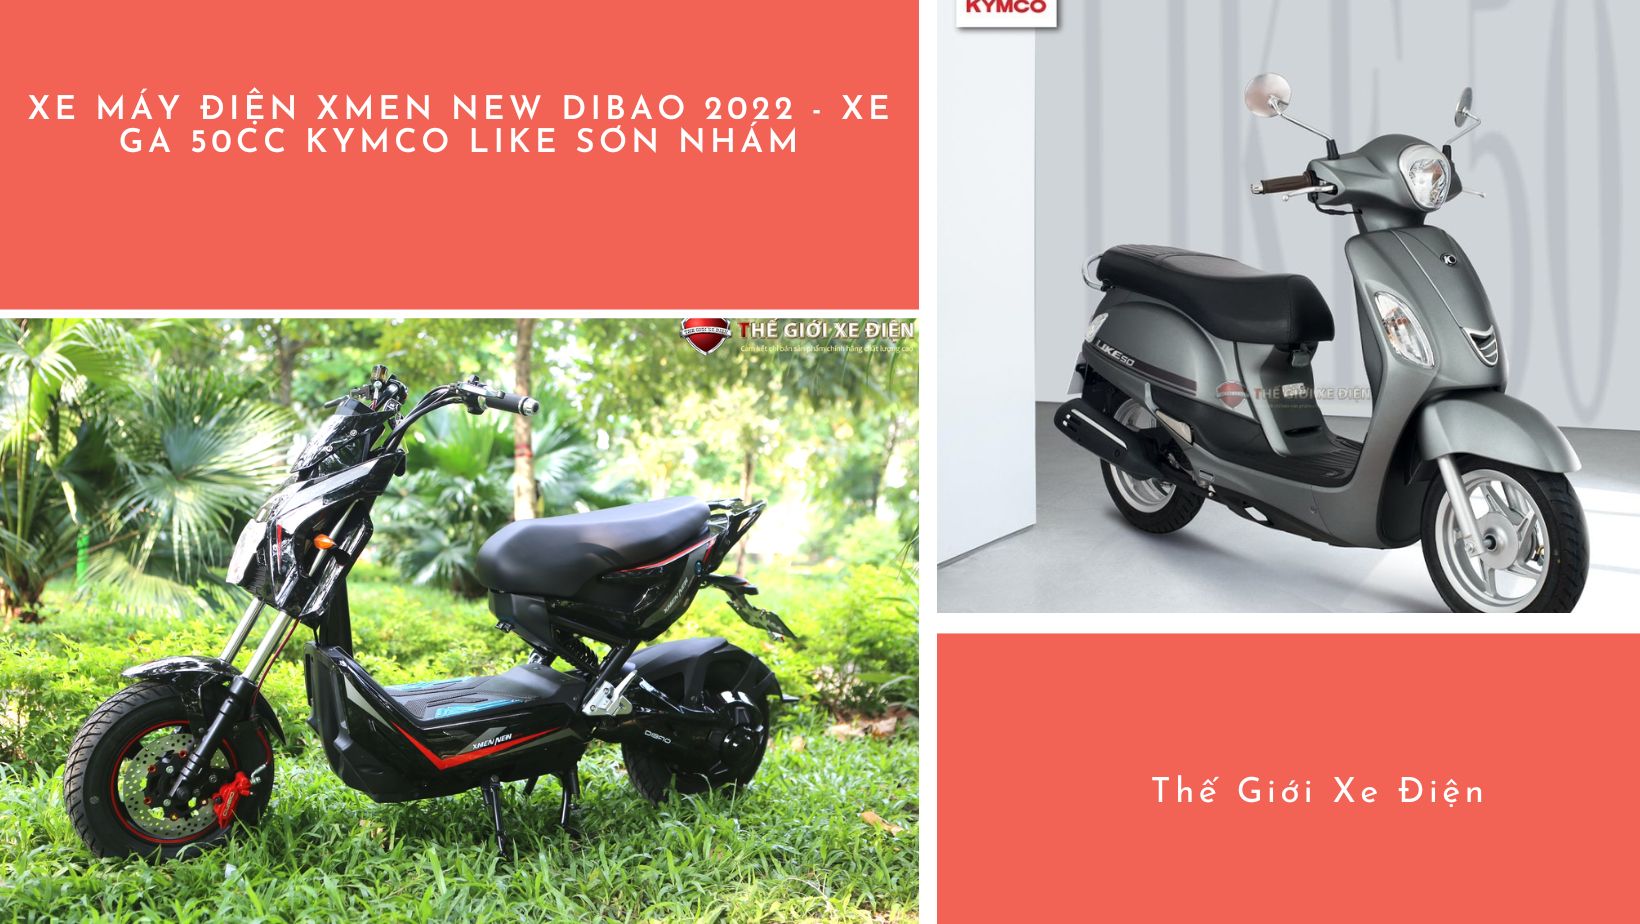 Tuổi trẻ xông pha cùng: Xe máy điện Xmen New Dibao 2023 - Xe ga 50cc KYMCO Like sơn nhám